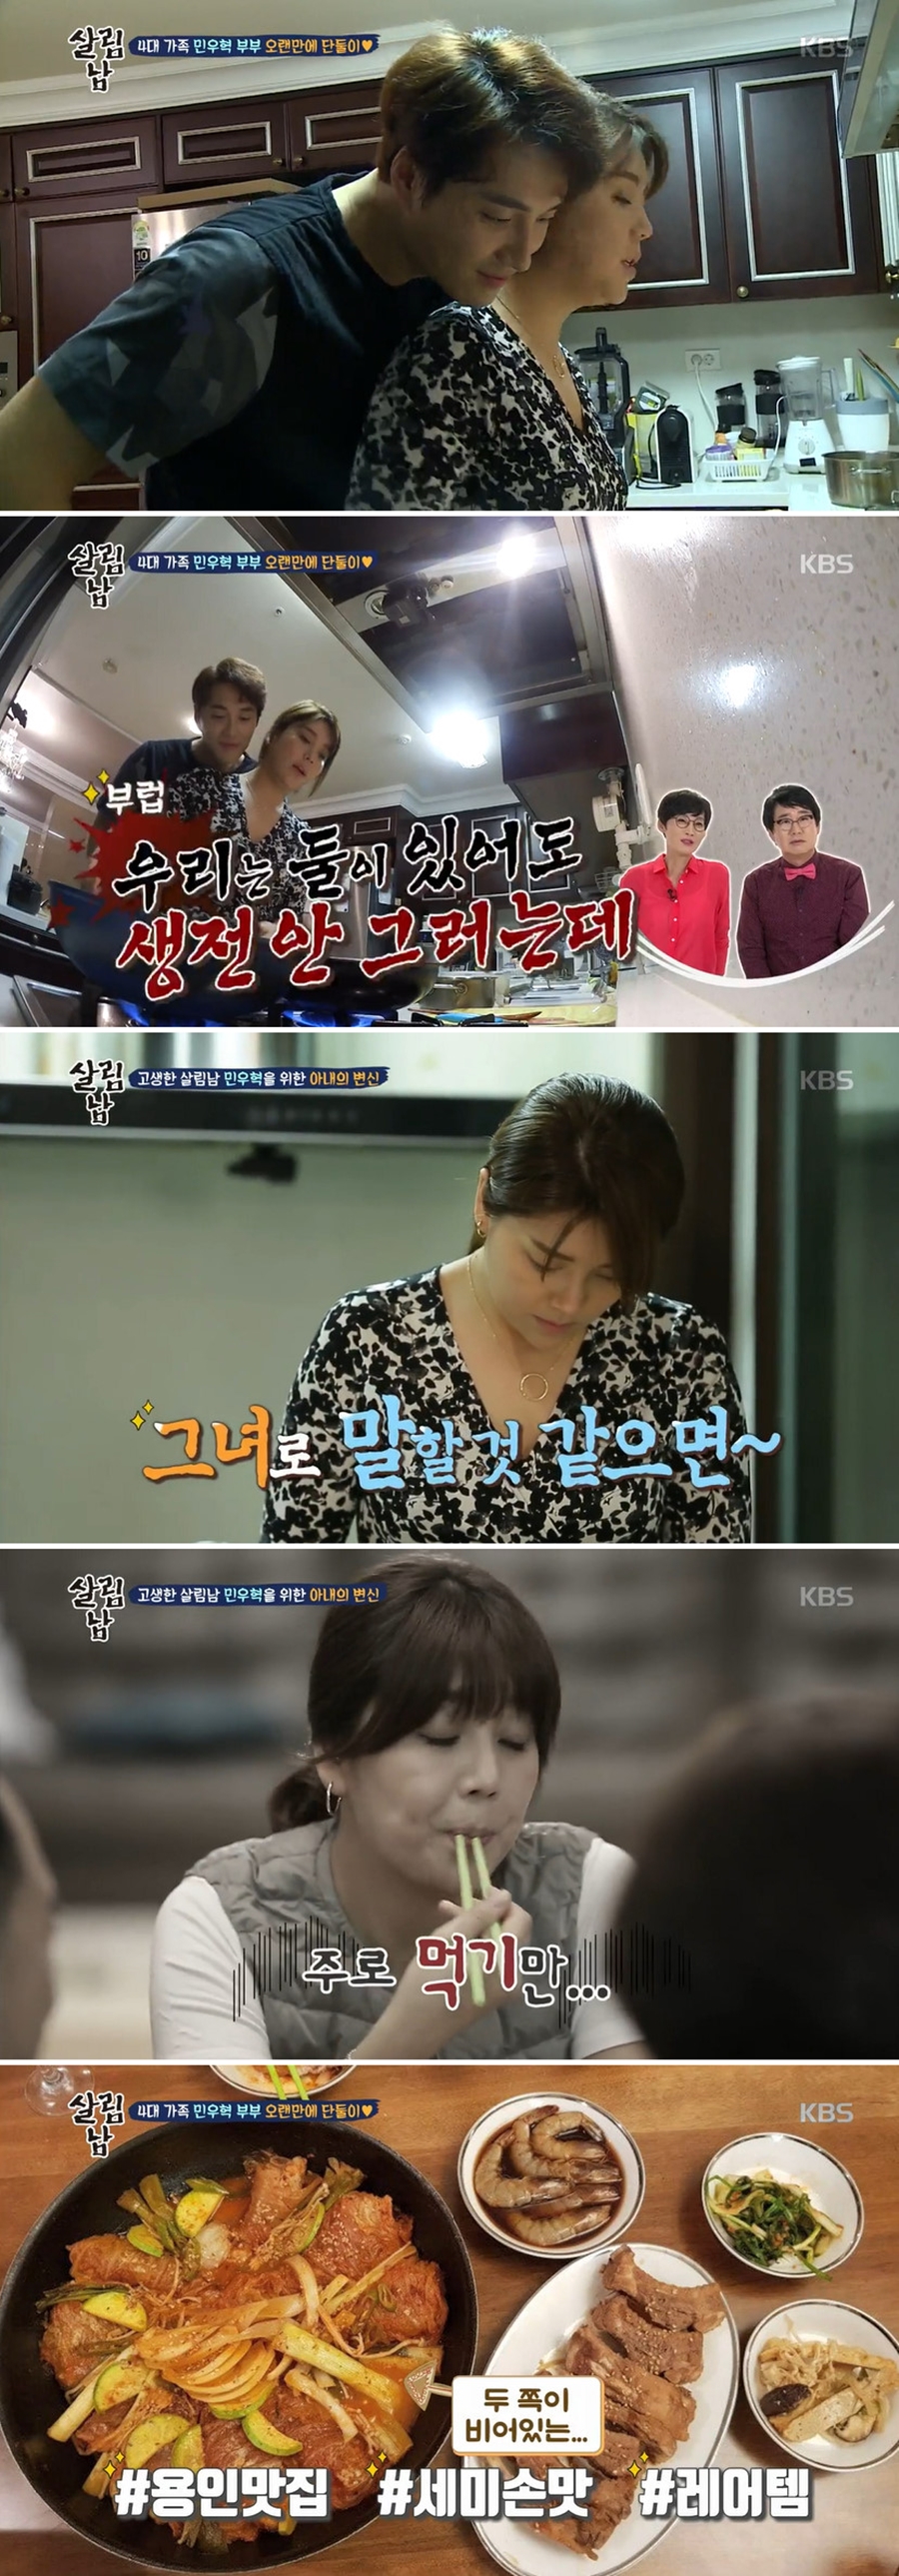 민우혁 이세미 살림남 / 사진: KBS '살림하는 남자들' 방송 캡처